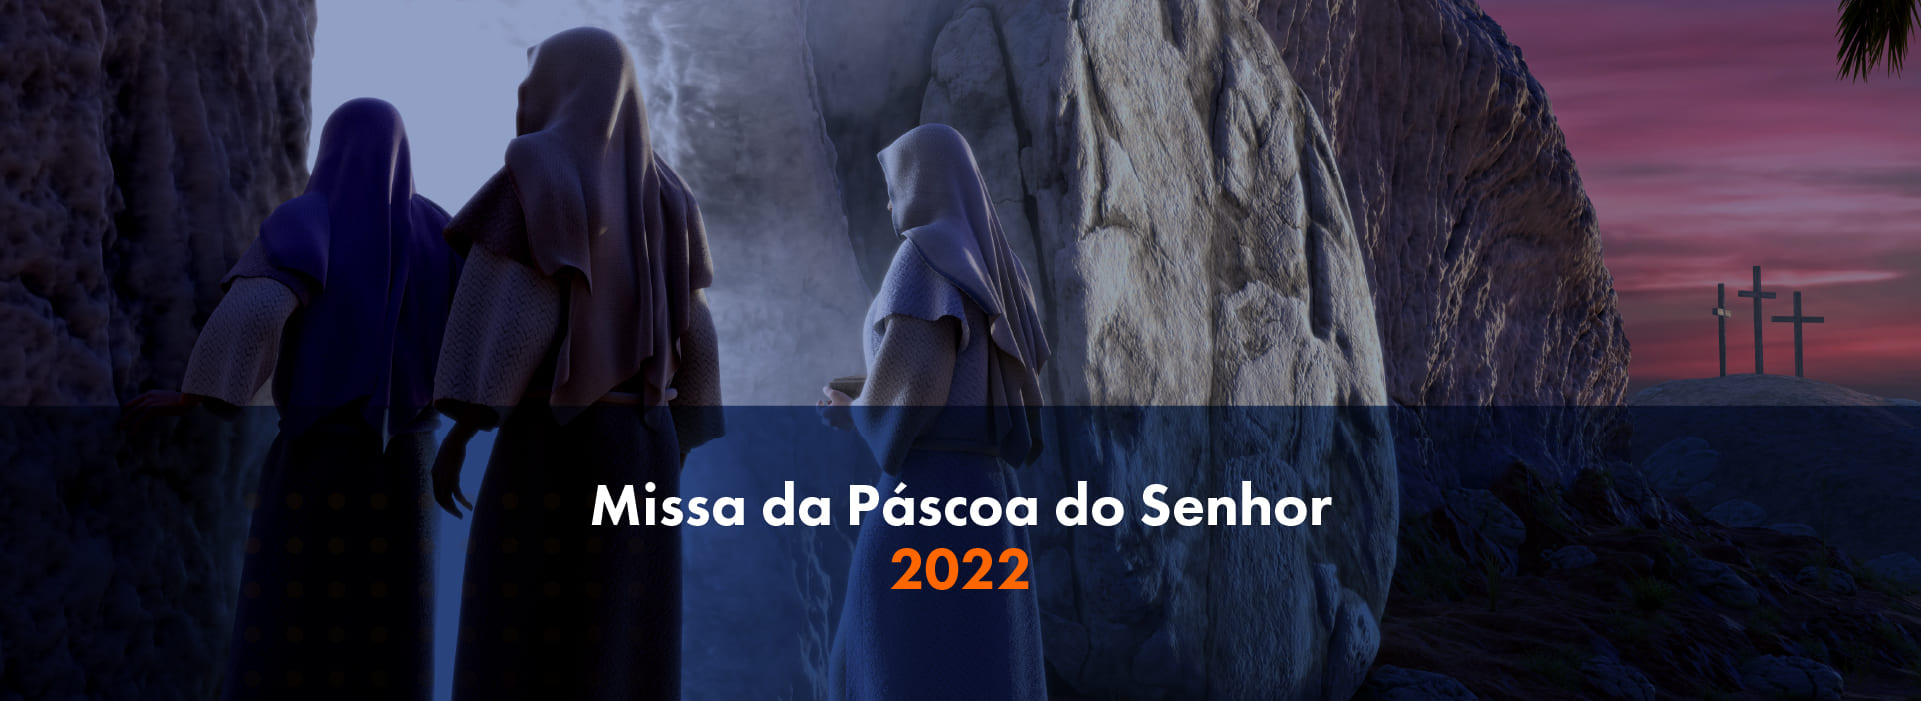 Missa Páscoa - Anuncio 2022